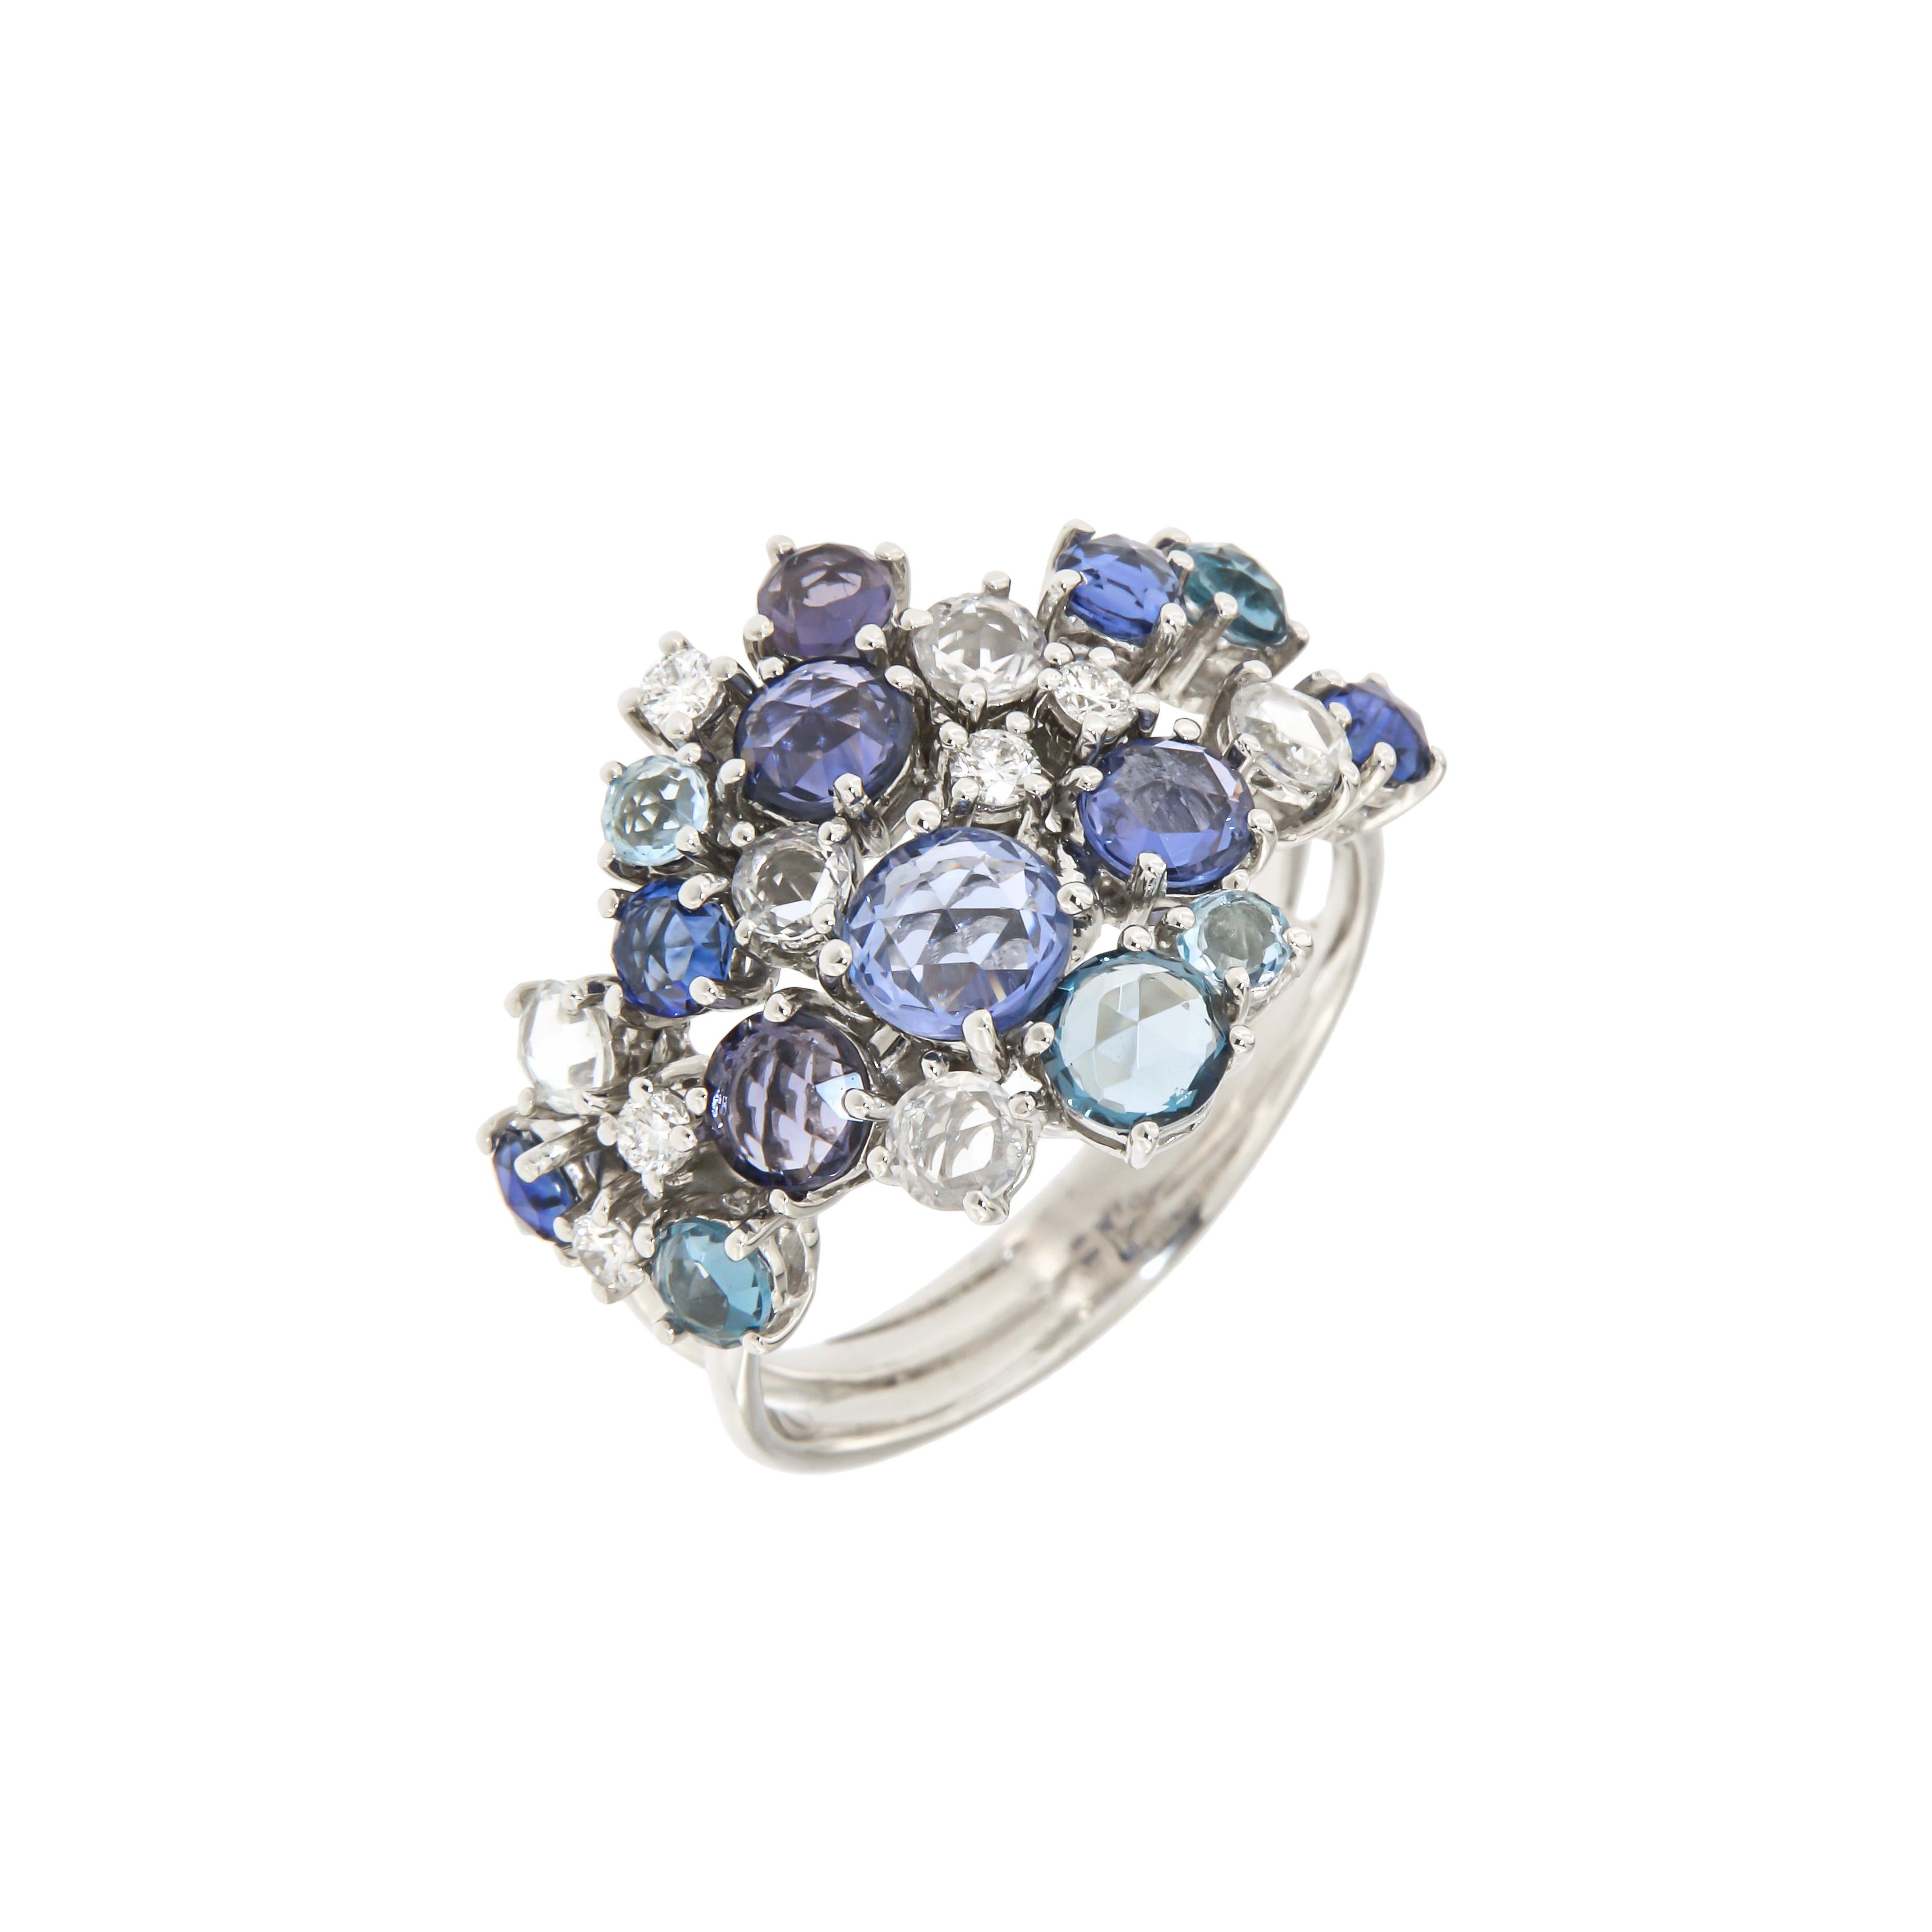 Ohrringe Weiß 18K Gold (passender Ring erhältlich)

Diamant 1,48 ct
Blauer Saphir

Gewicht 8,40

Es ist uns eine Ehre, edlen Schmuck zu kreieren, und aus diesem Grund arbeiten wir nur mit hochwertigen, langlebigen Materialien, die fast sofort zu